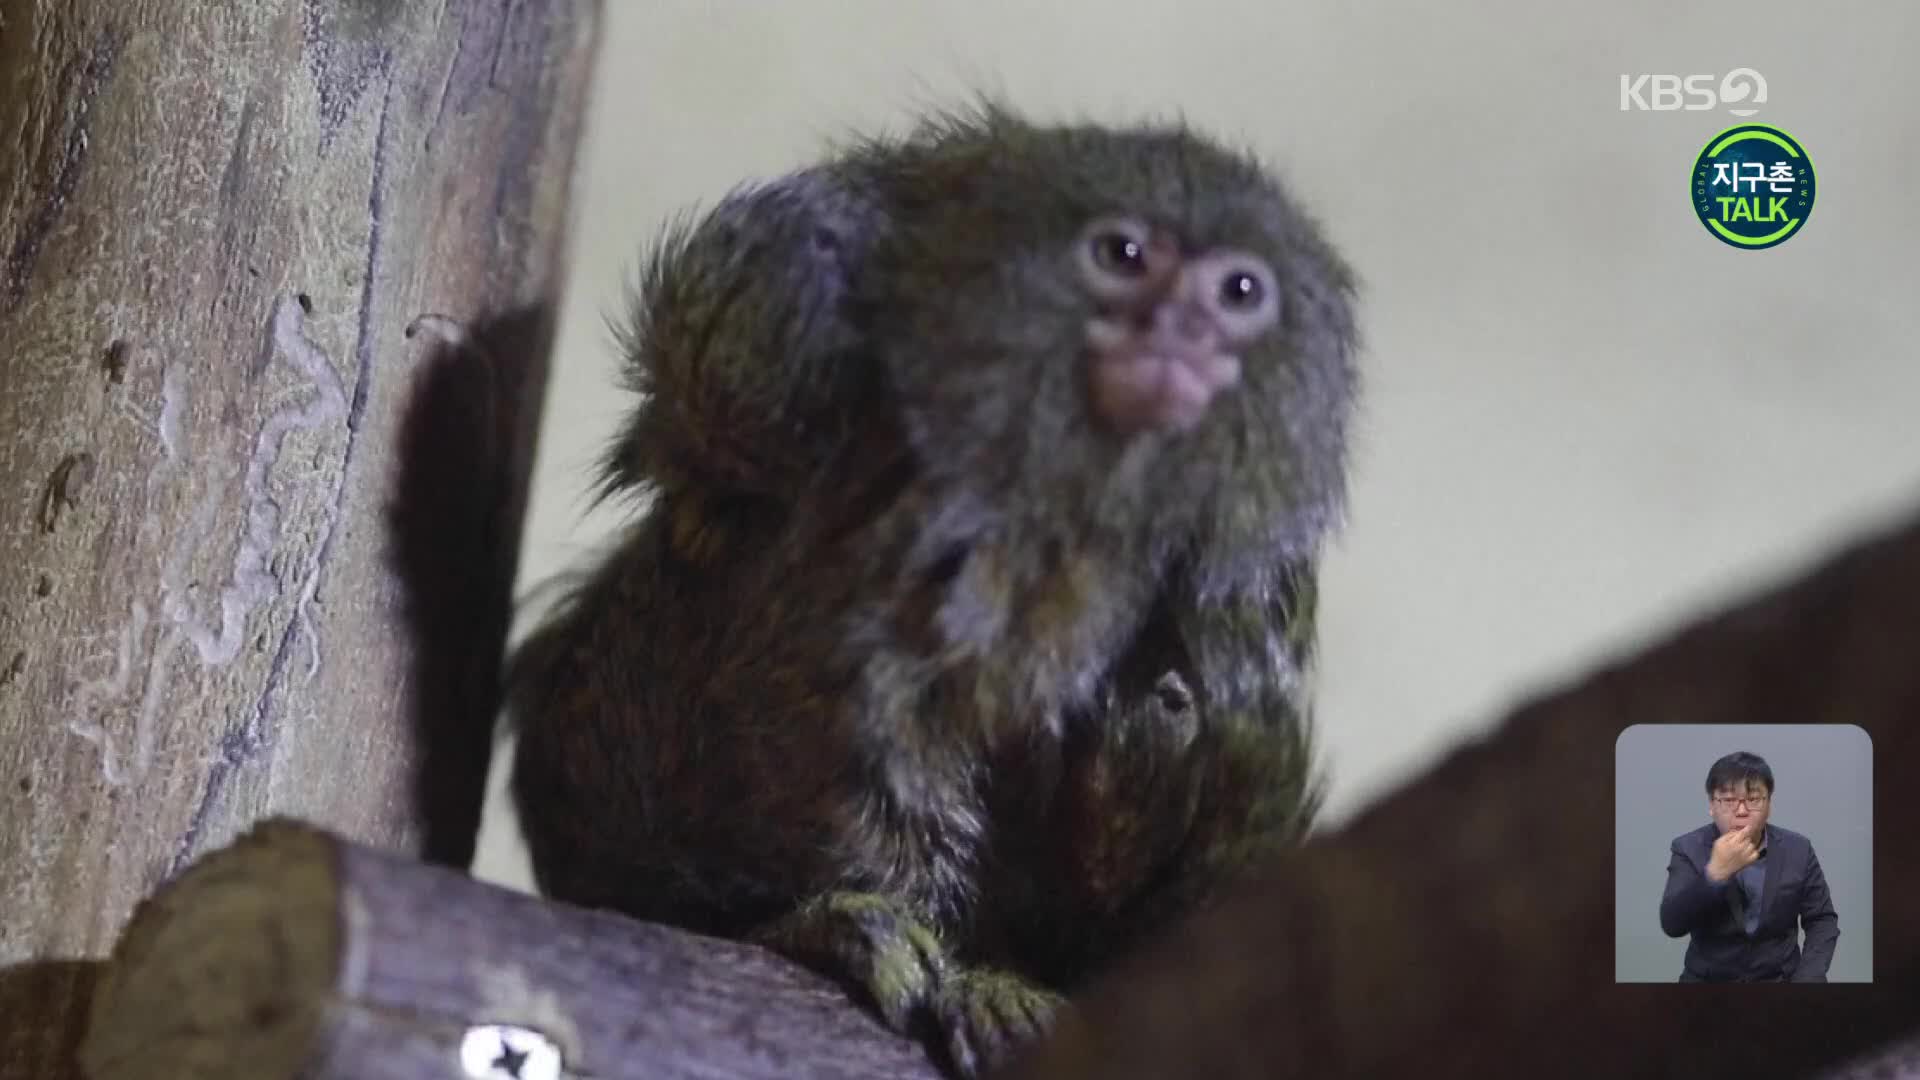 [지구촌 Talk] 3주 전 태어난 새끼 마모셋…가장 작은 원숭이